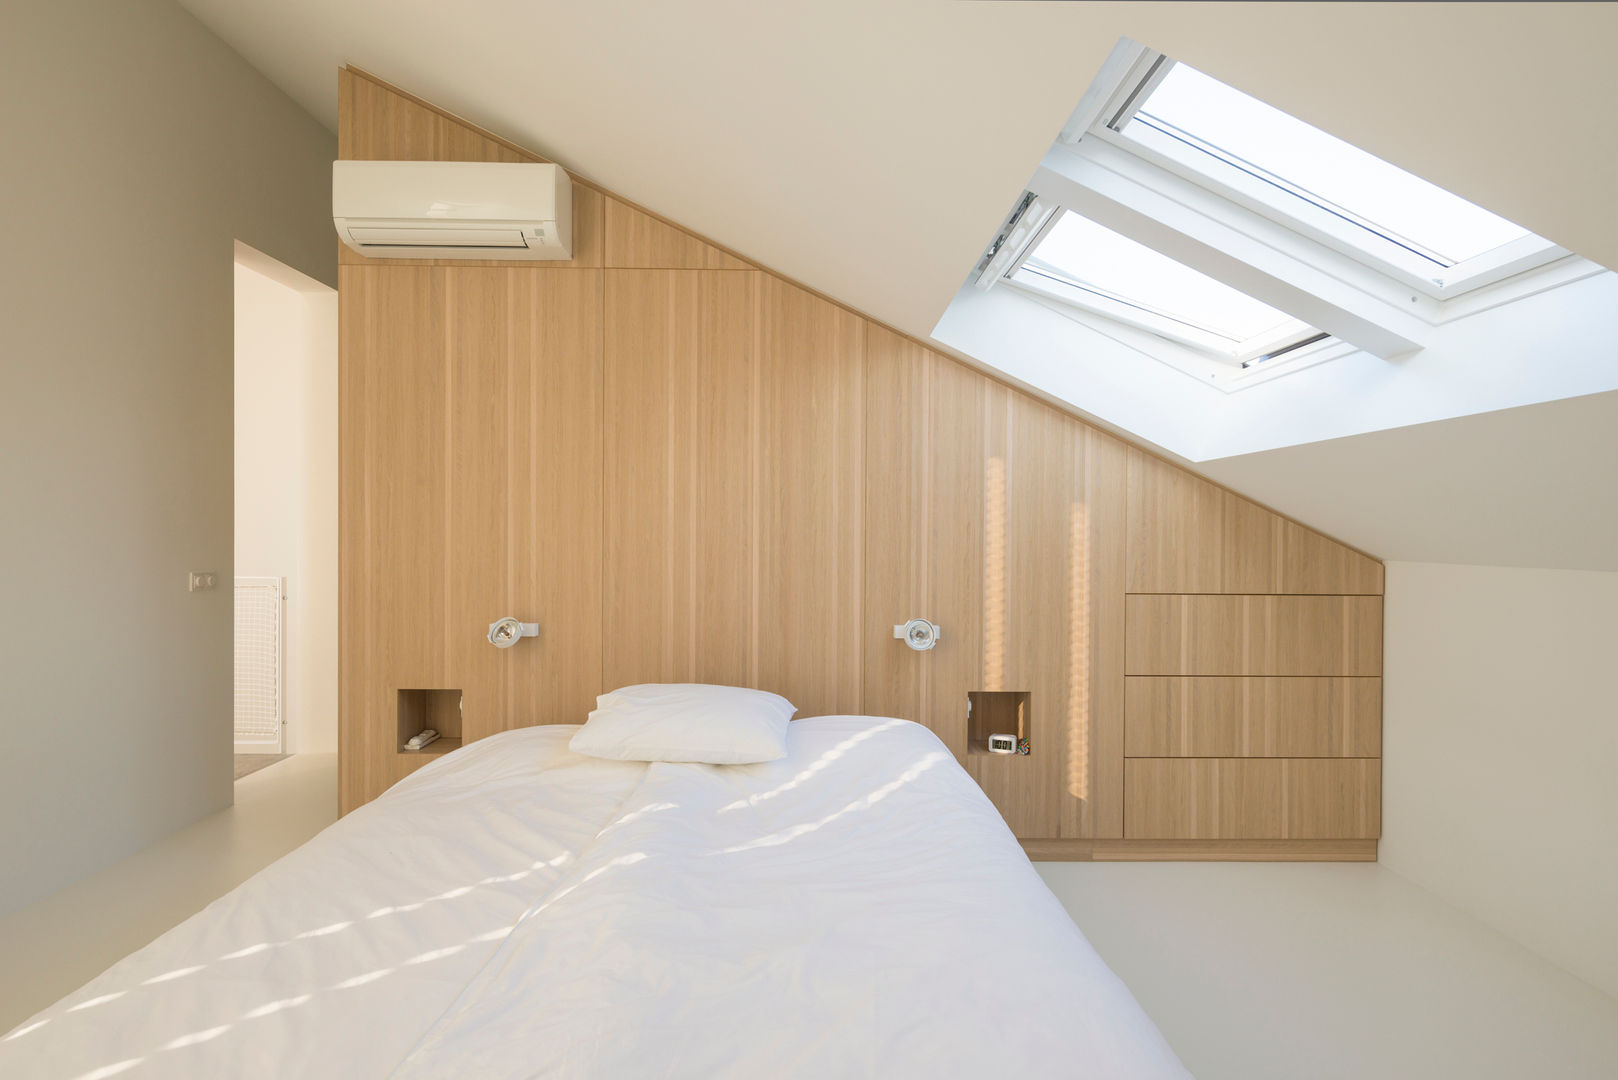 Woonhuis Leidsche Rijn, Architect2GO Architect2GO Bedroom